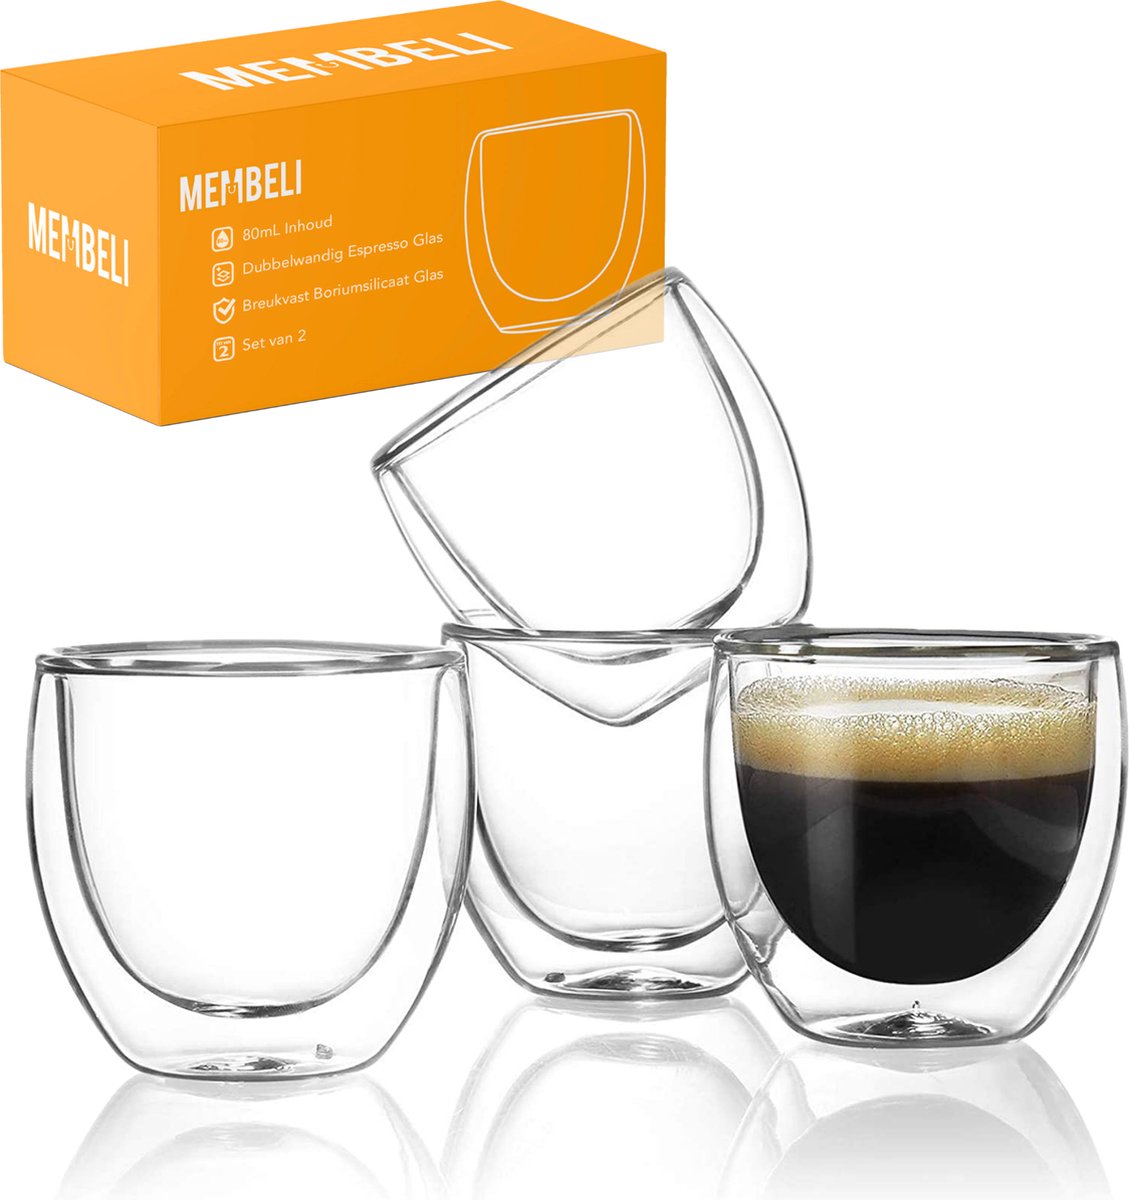 Grafiek Vermeend Zeeslak Membeli Espresso Kopjes Dubbelwandig Glas - Set van 4 - 80 mL - Espresso  Glazen - Espressokopjes